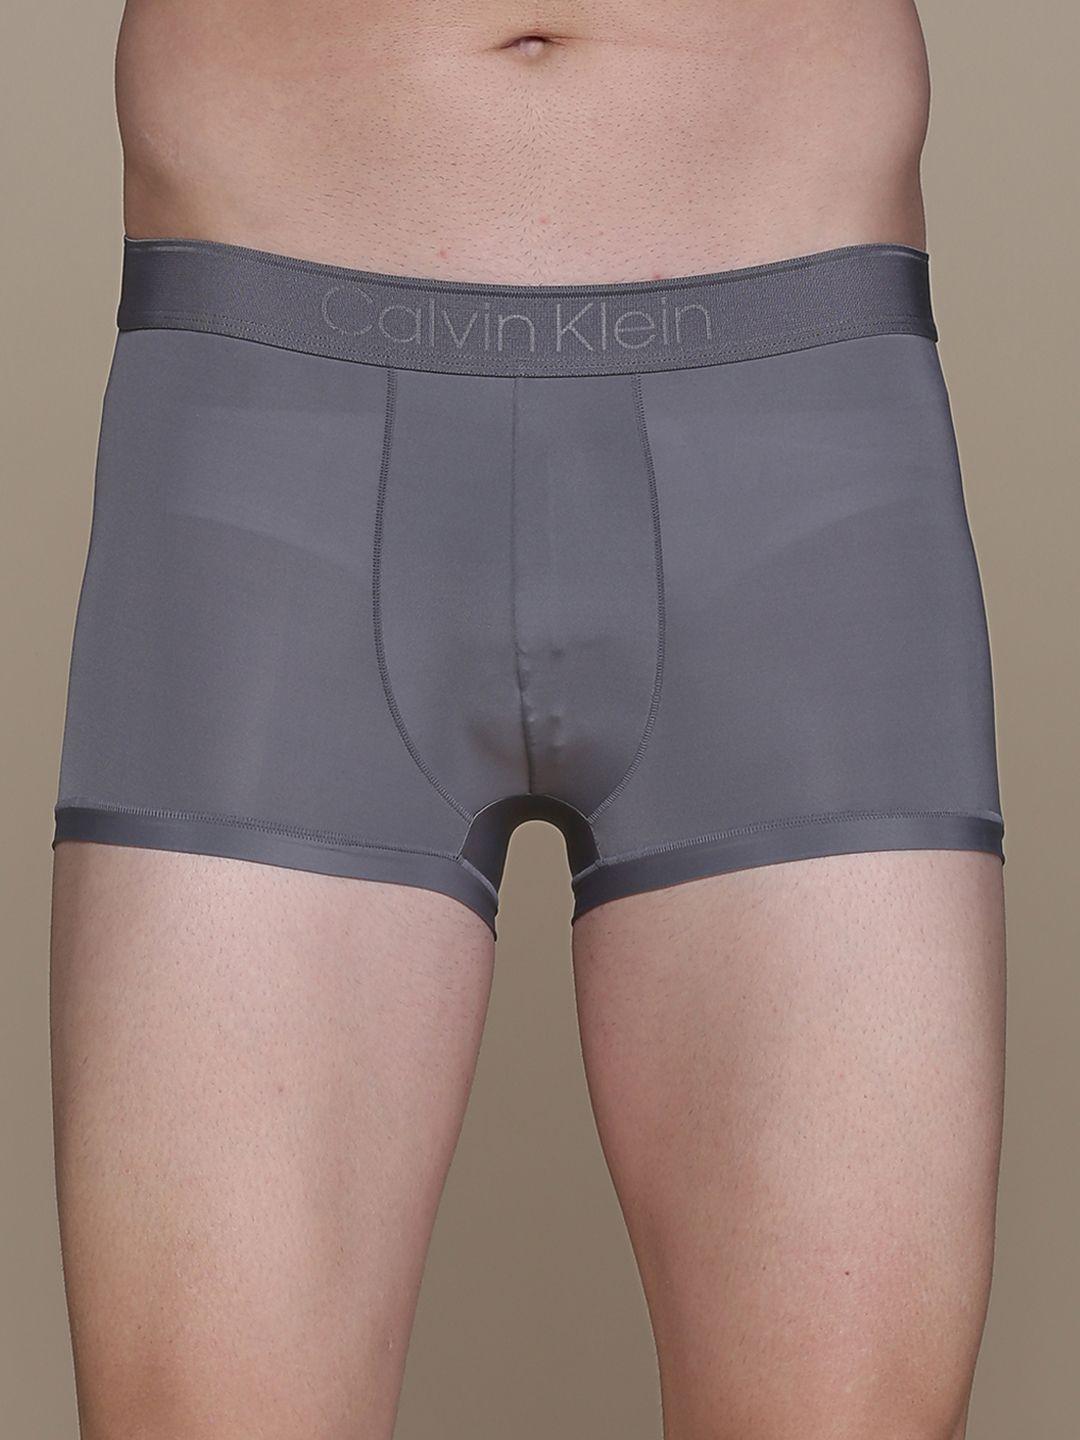 calvin klein underwear men grey solid trunk nb29045gs